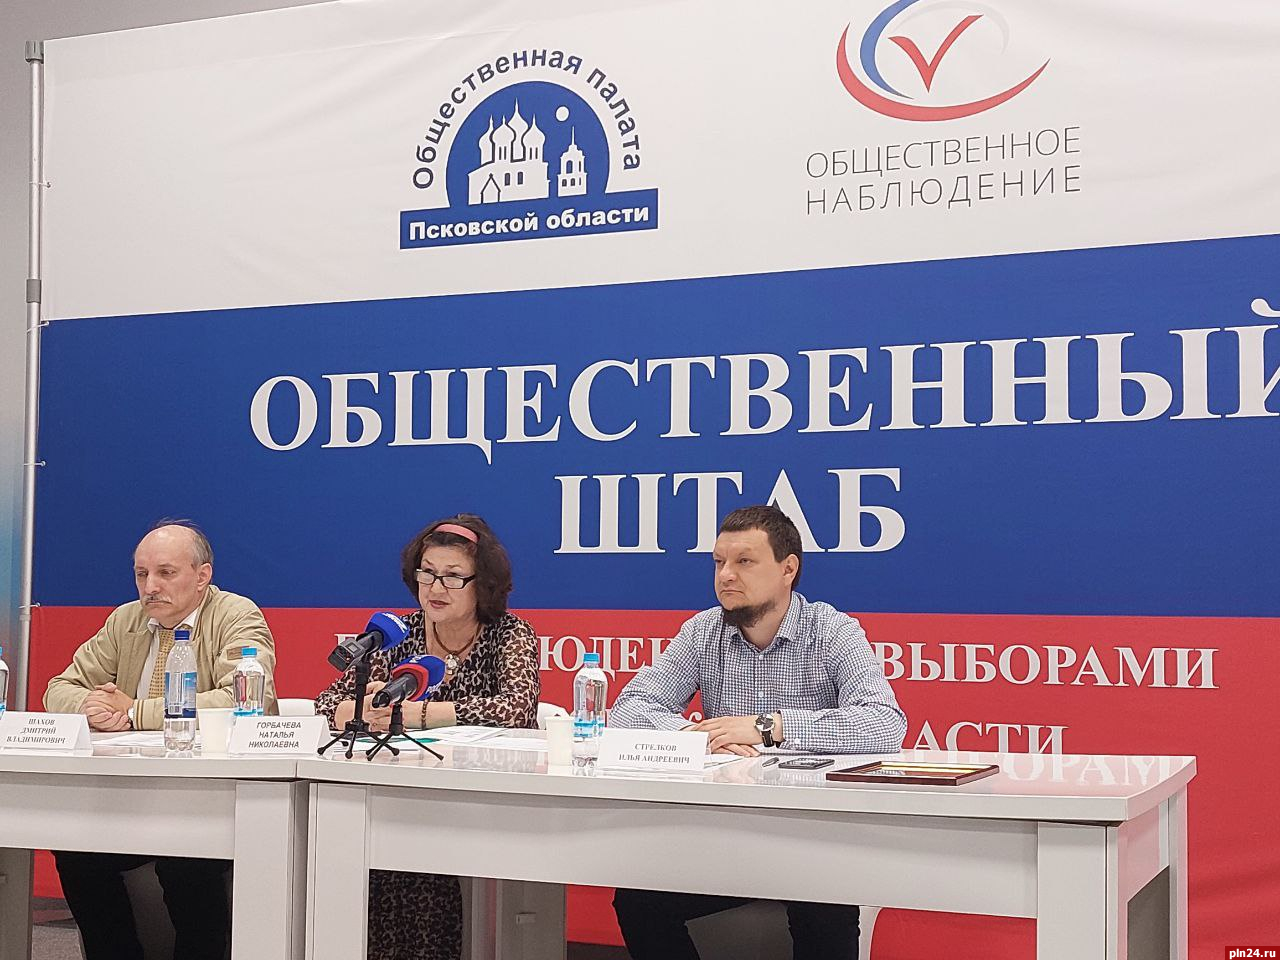 ДЭГ не повлияло на корреляцию выборов - Дмитрий Шахов 